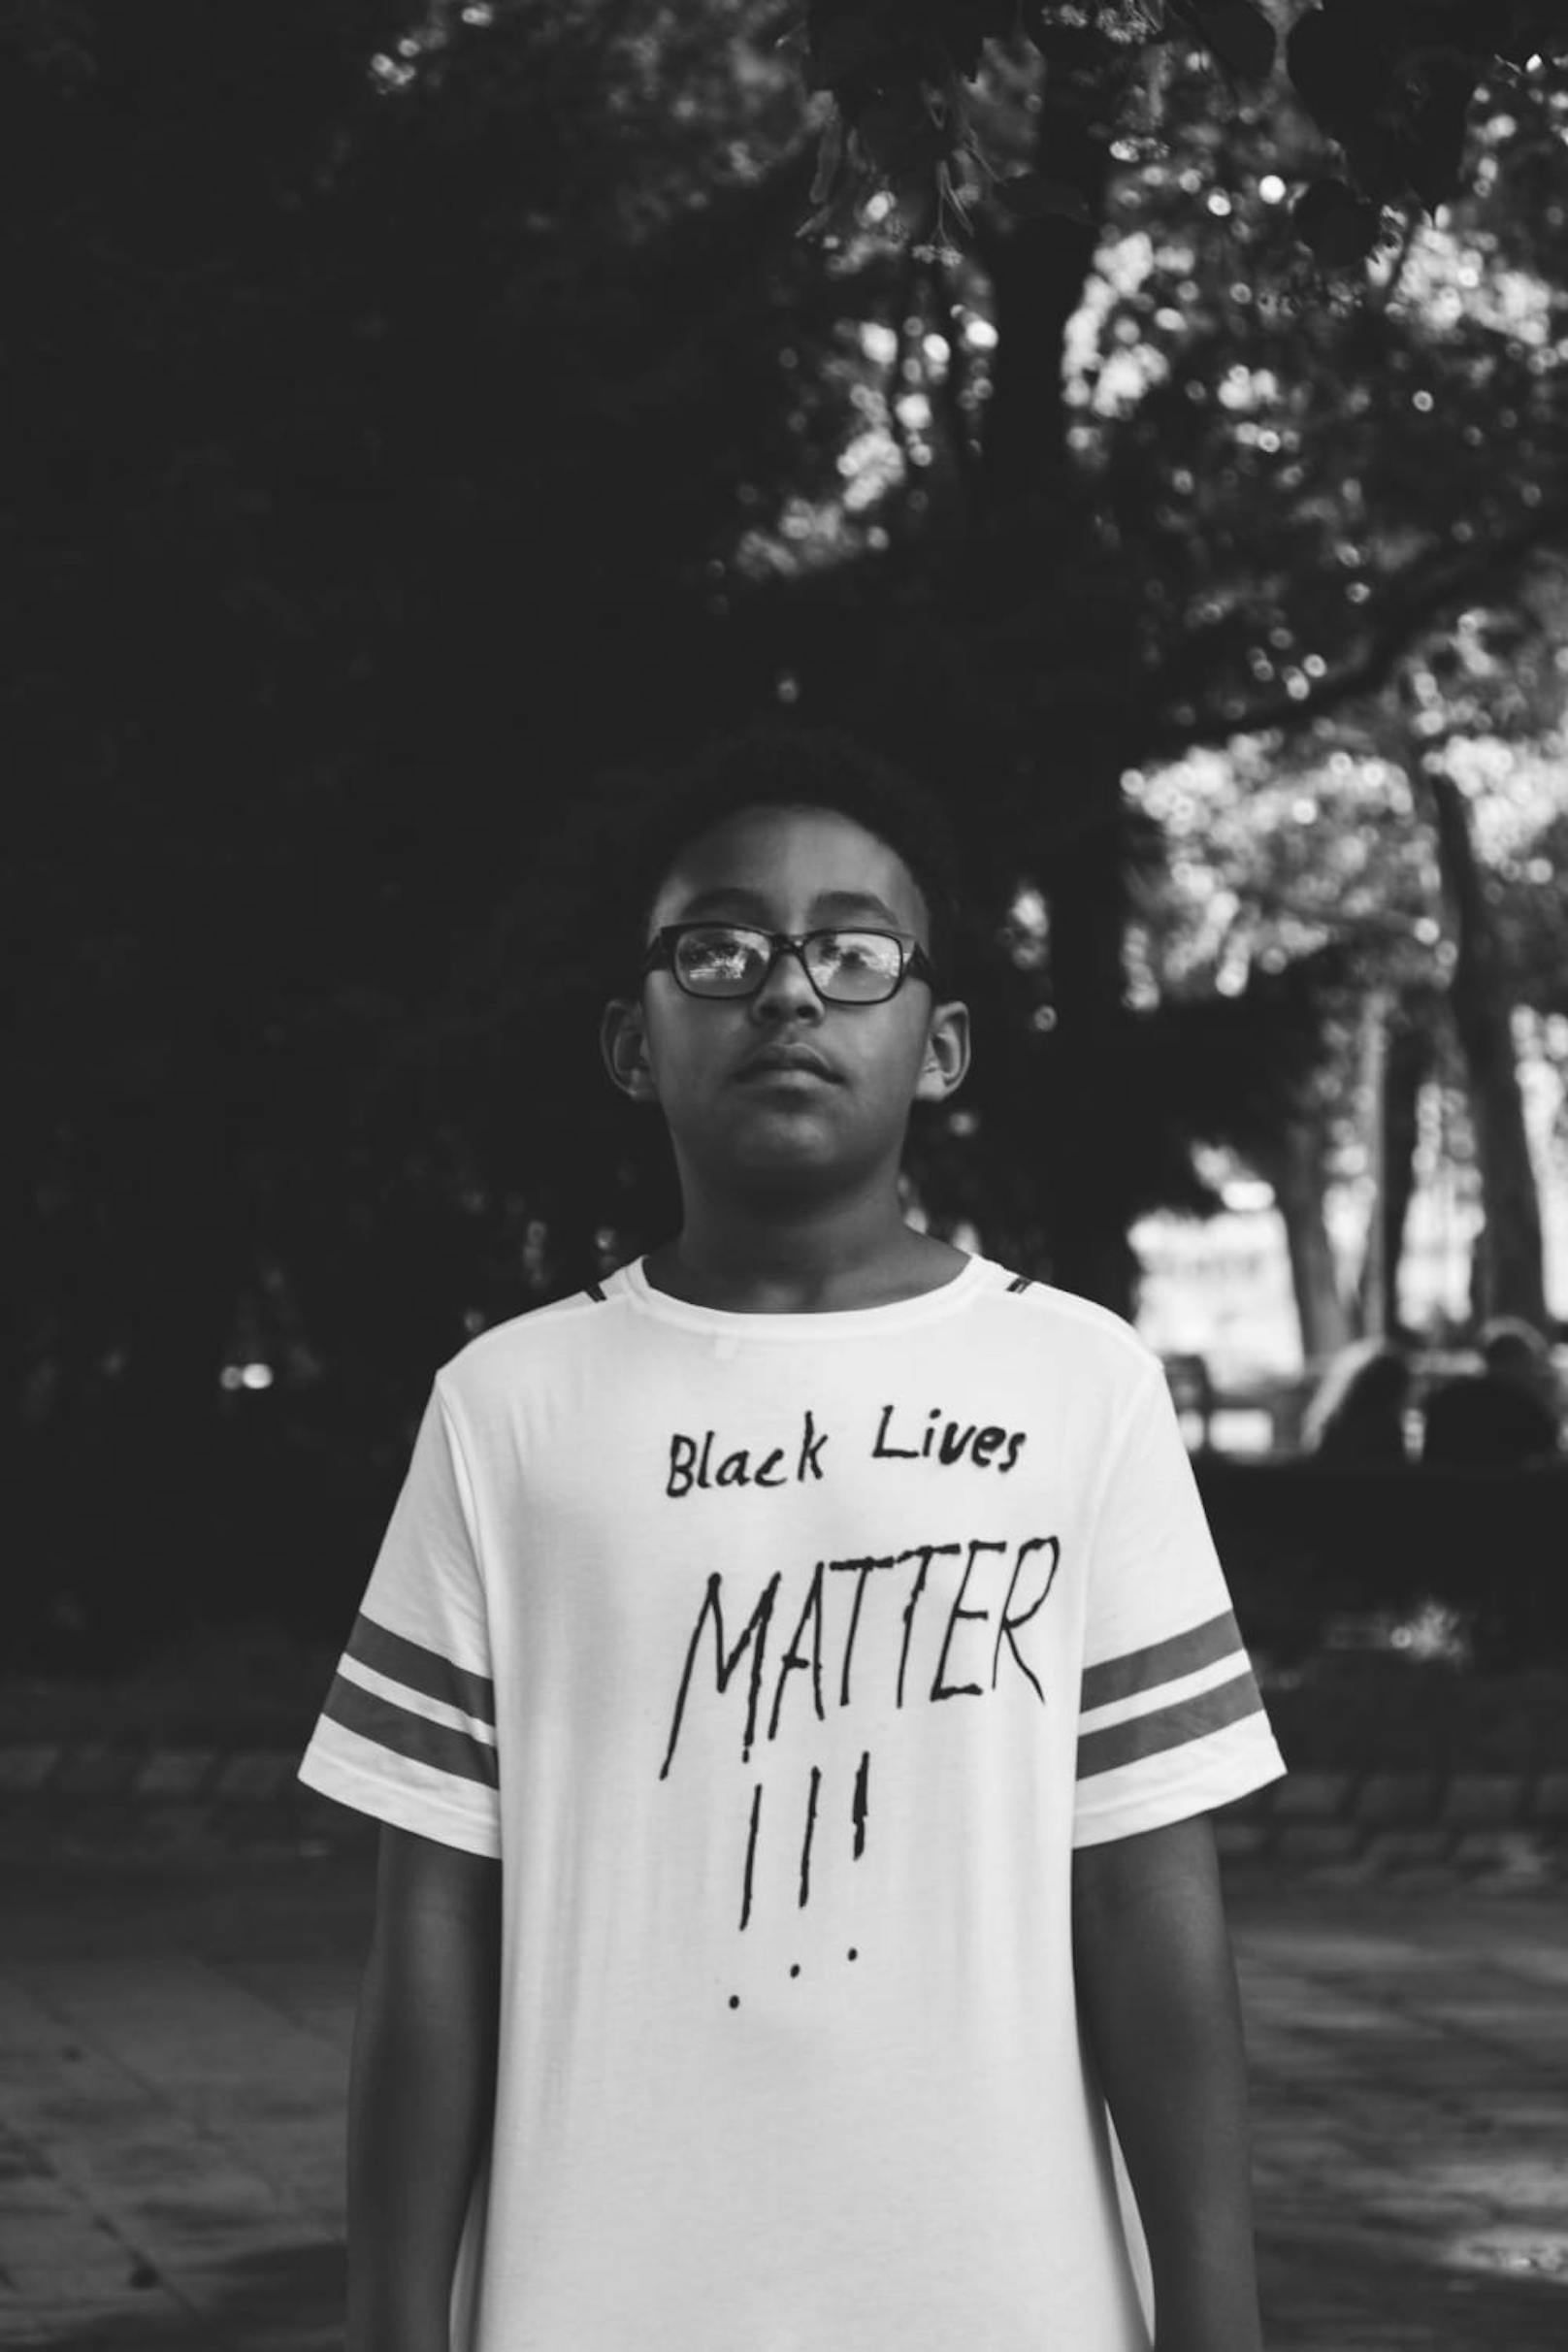 "Black Lives Matter !!!"